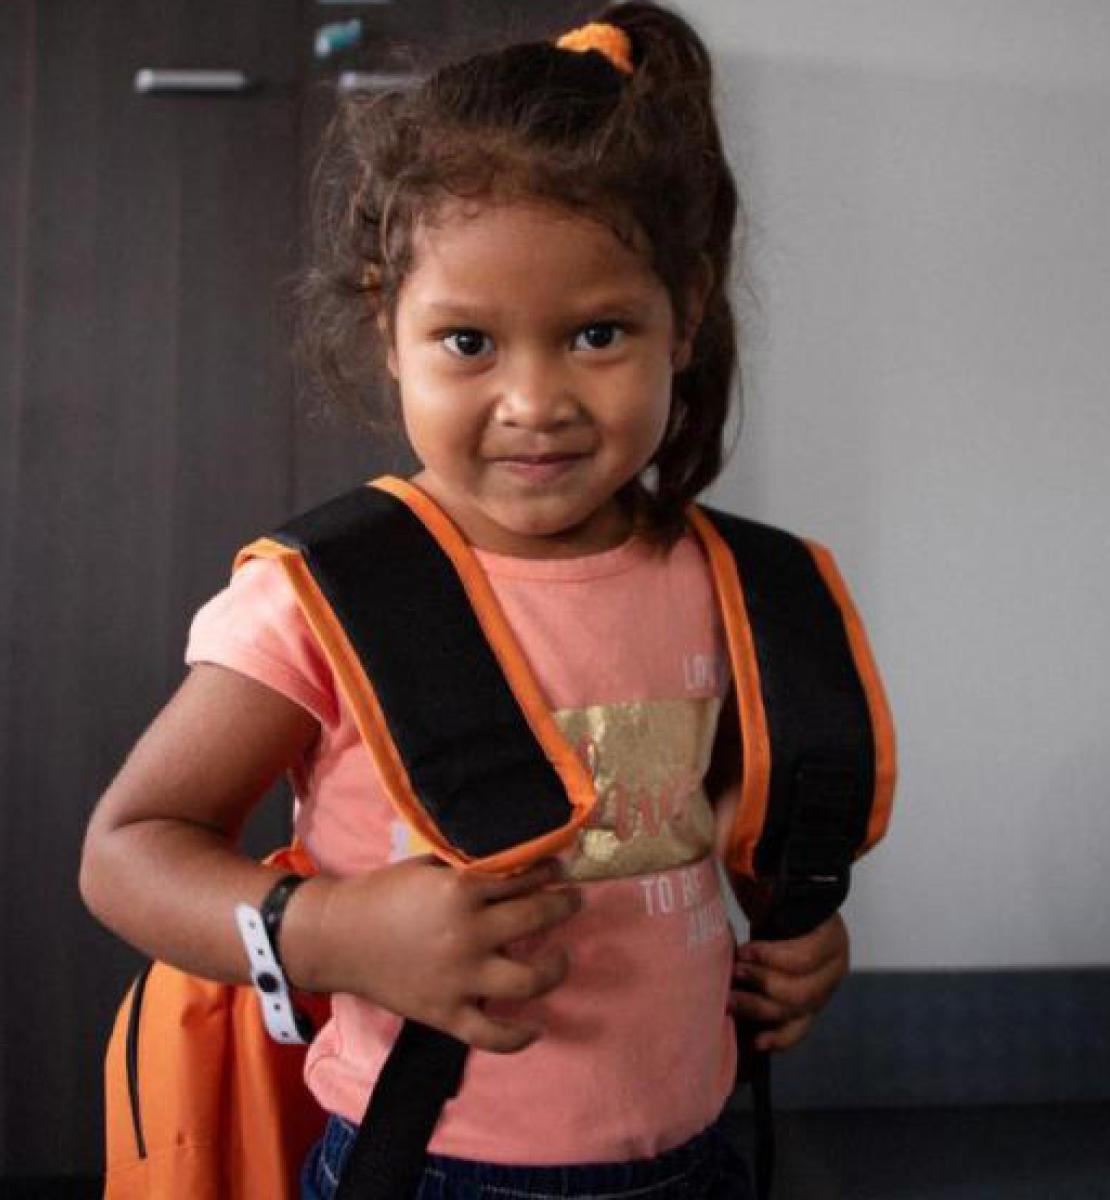 فتاة صغيرة تبتسم وتنظر بثبات نحو الكاميرا وهي تمسك حقيبتها.